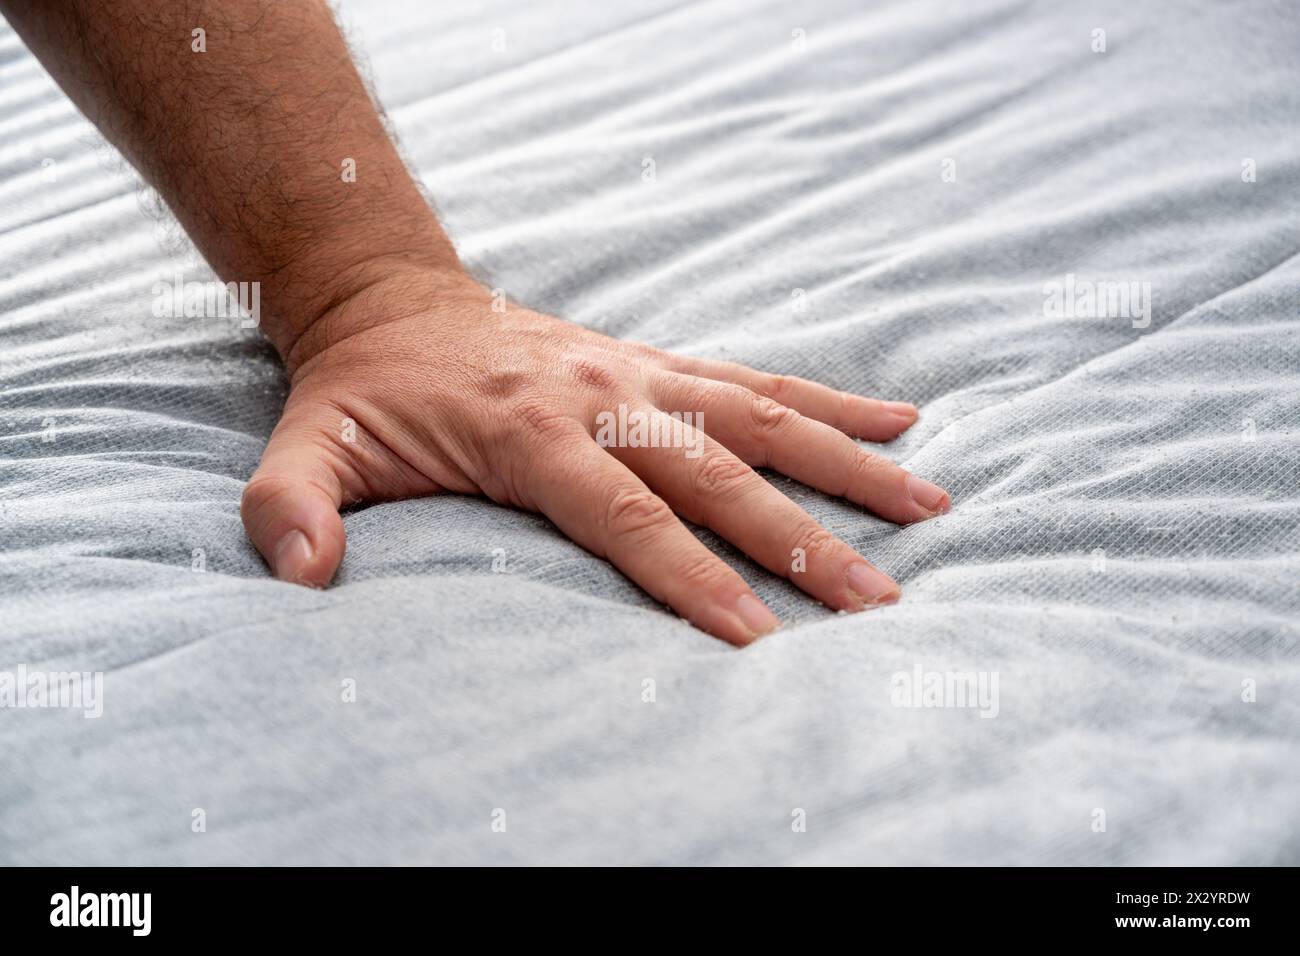 Der Mann überprüft die Qualität und Weichheit der neuen Matratze, die er kaufen wird, indem er sie mit der Hand drückt Stockfoto